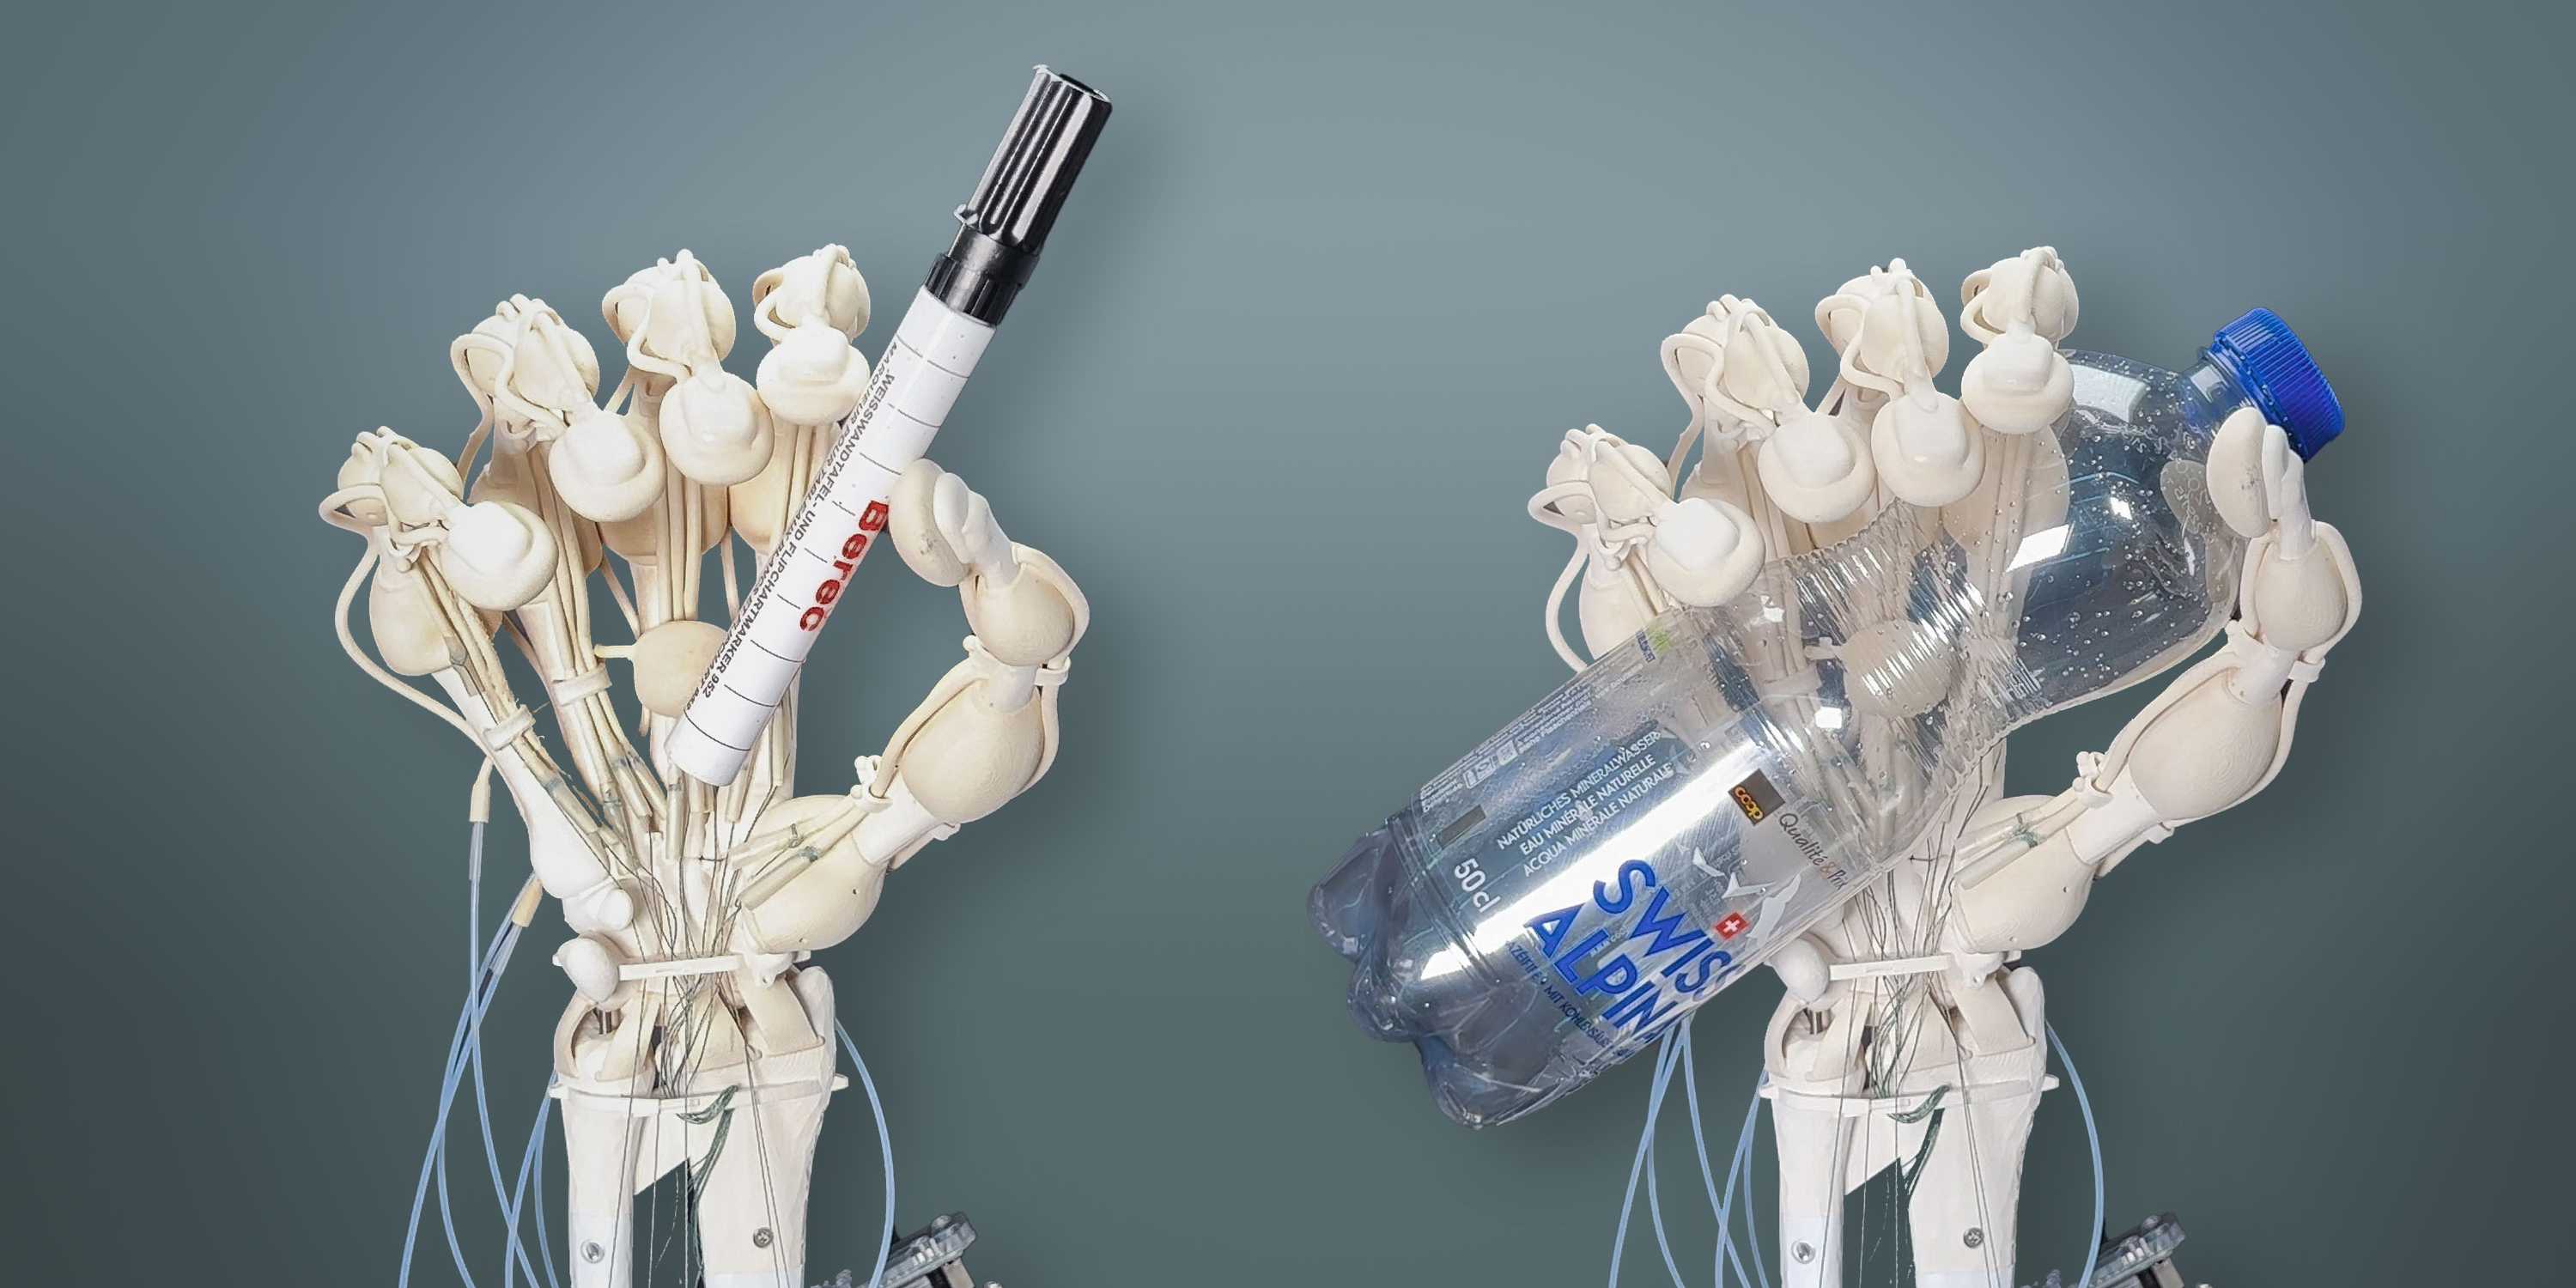 Forskare från ETH Zürich har för första gången lyckats skriva ut en robotarm med ben, ligament och senor